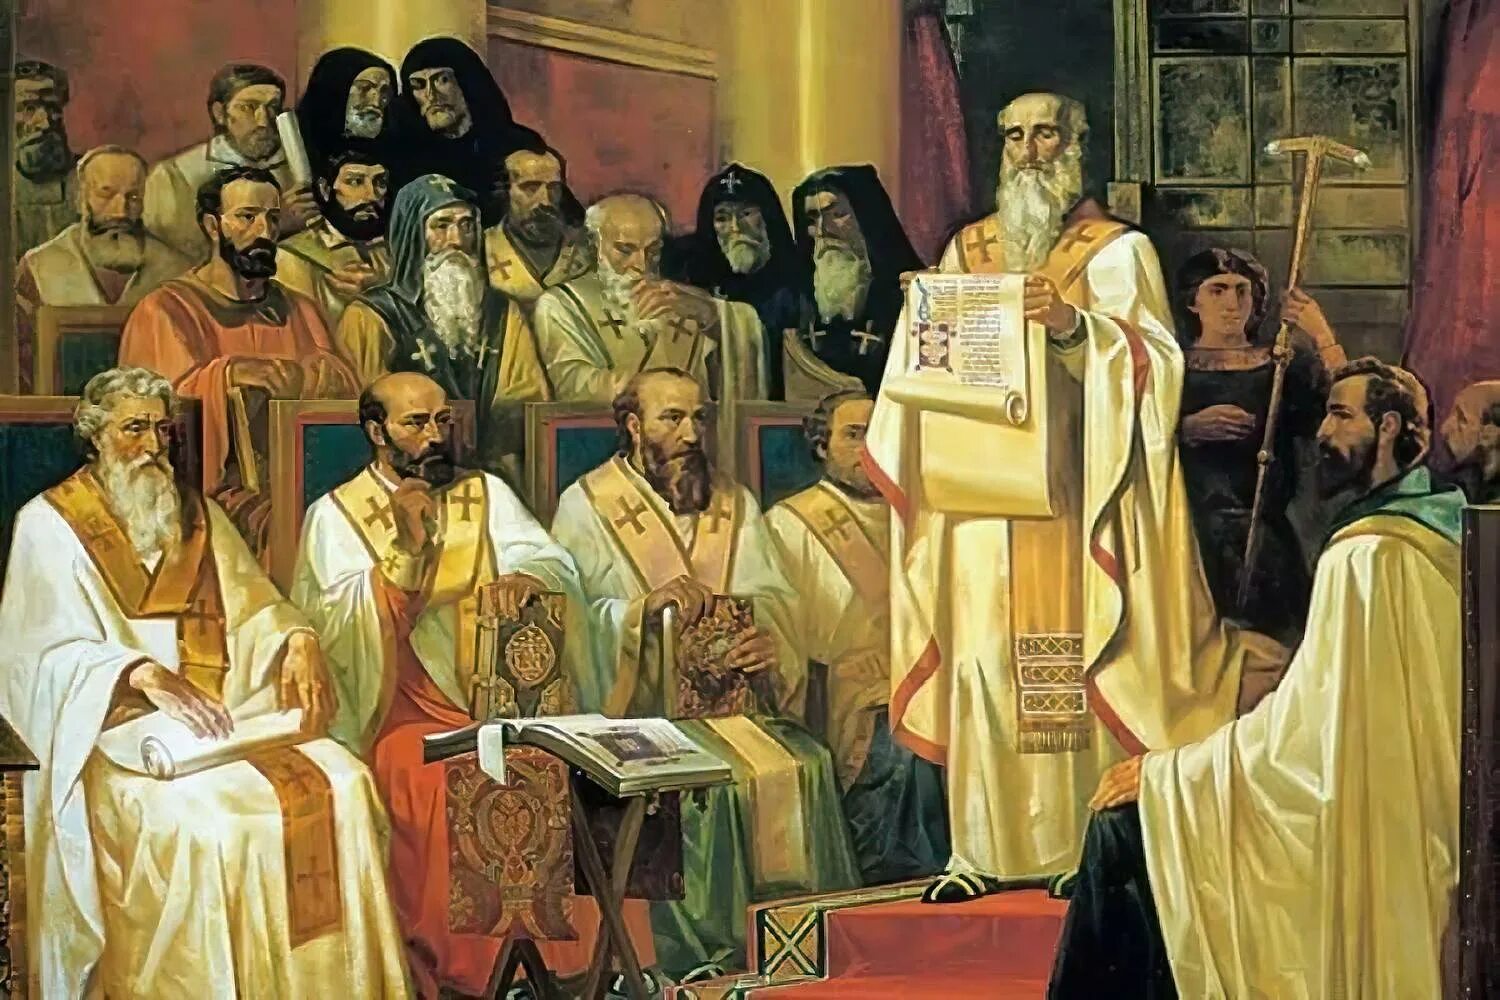 Возникновение русской православной церкви